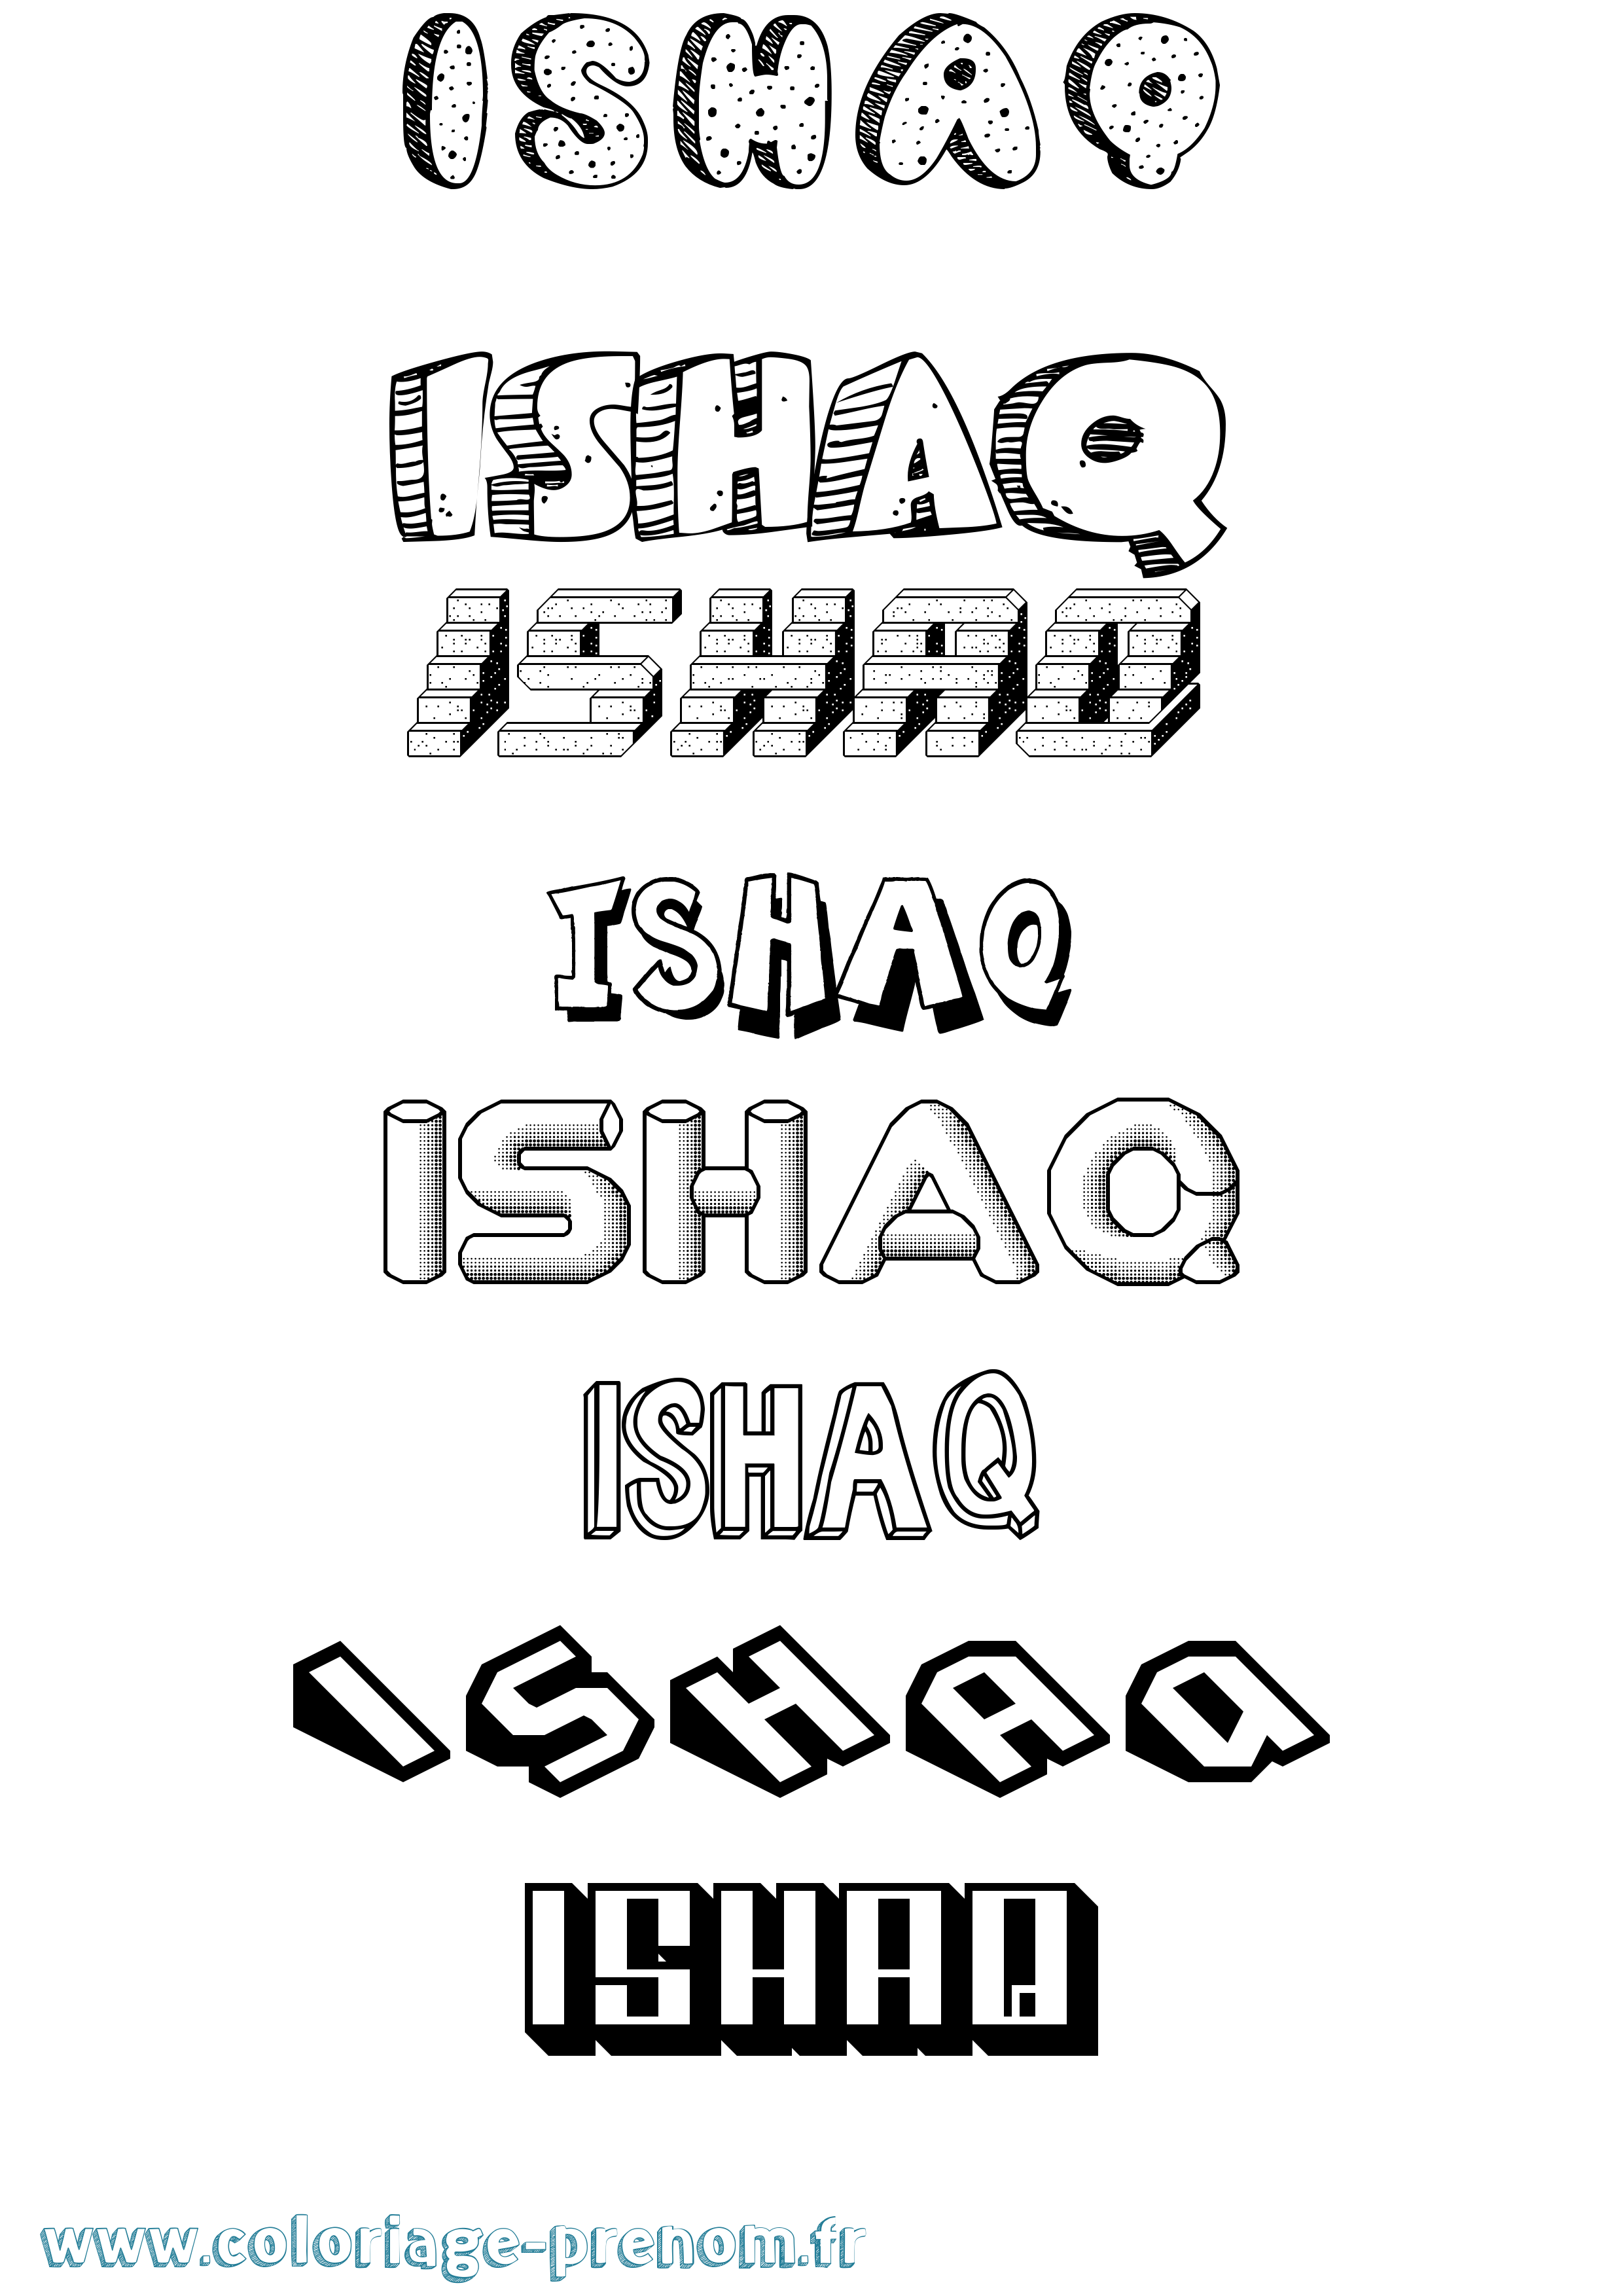 Coloriage prénom Ishaq